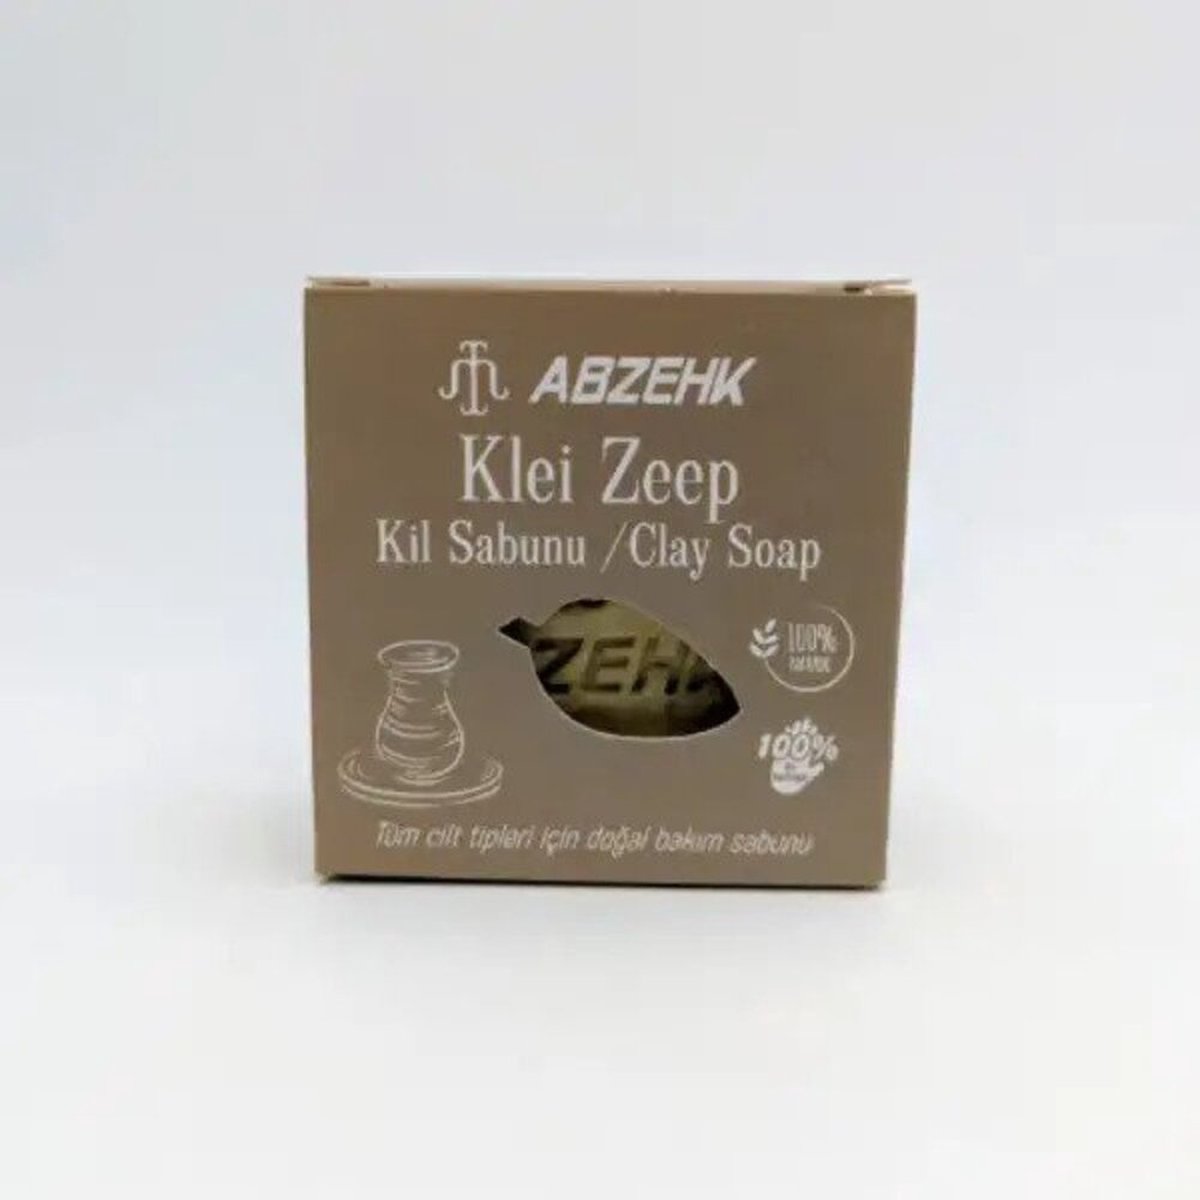 Abzehk - Handzeep, Sabun, Handsoap - Klei Zeep, Kil Sabunu, Clay Soap - 125gr